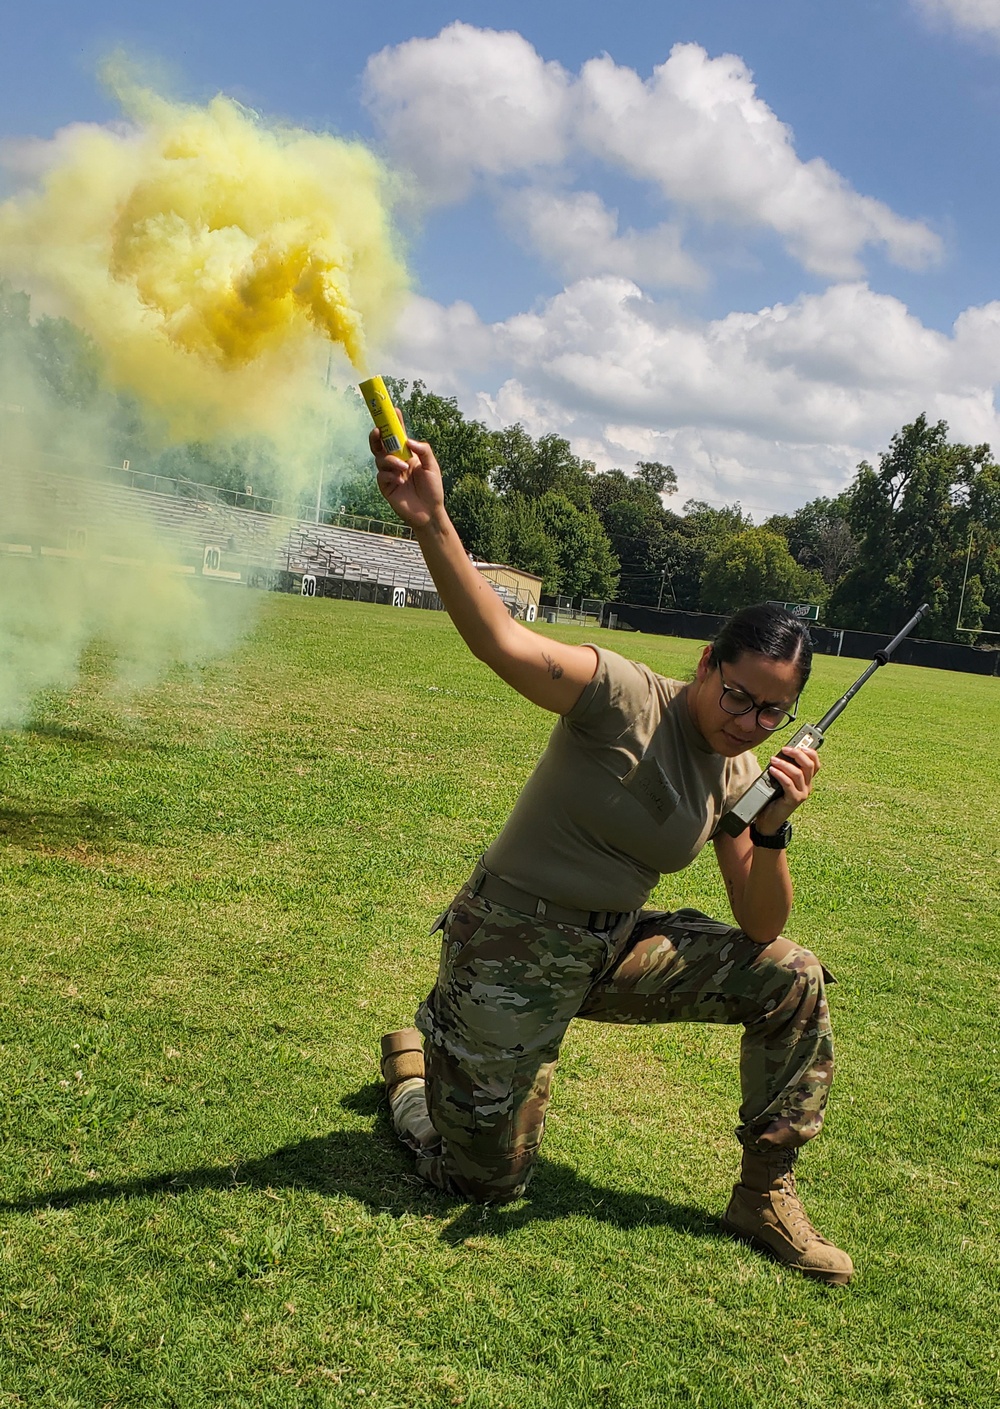 Senior Airman Rubella Gomez demonstrates the use of a smoke grenade and proper radio techniques